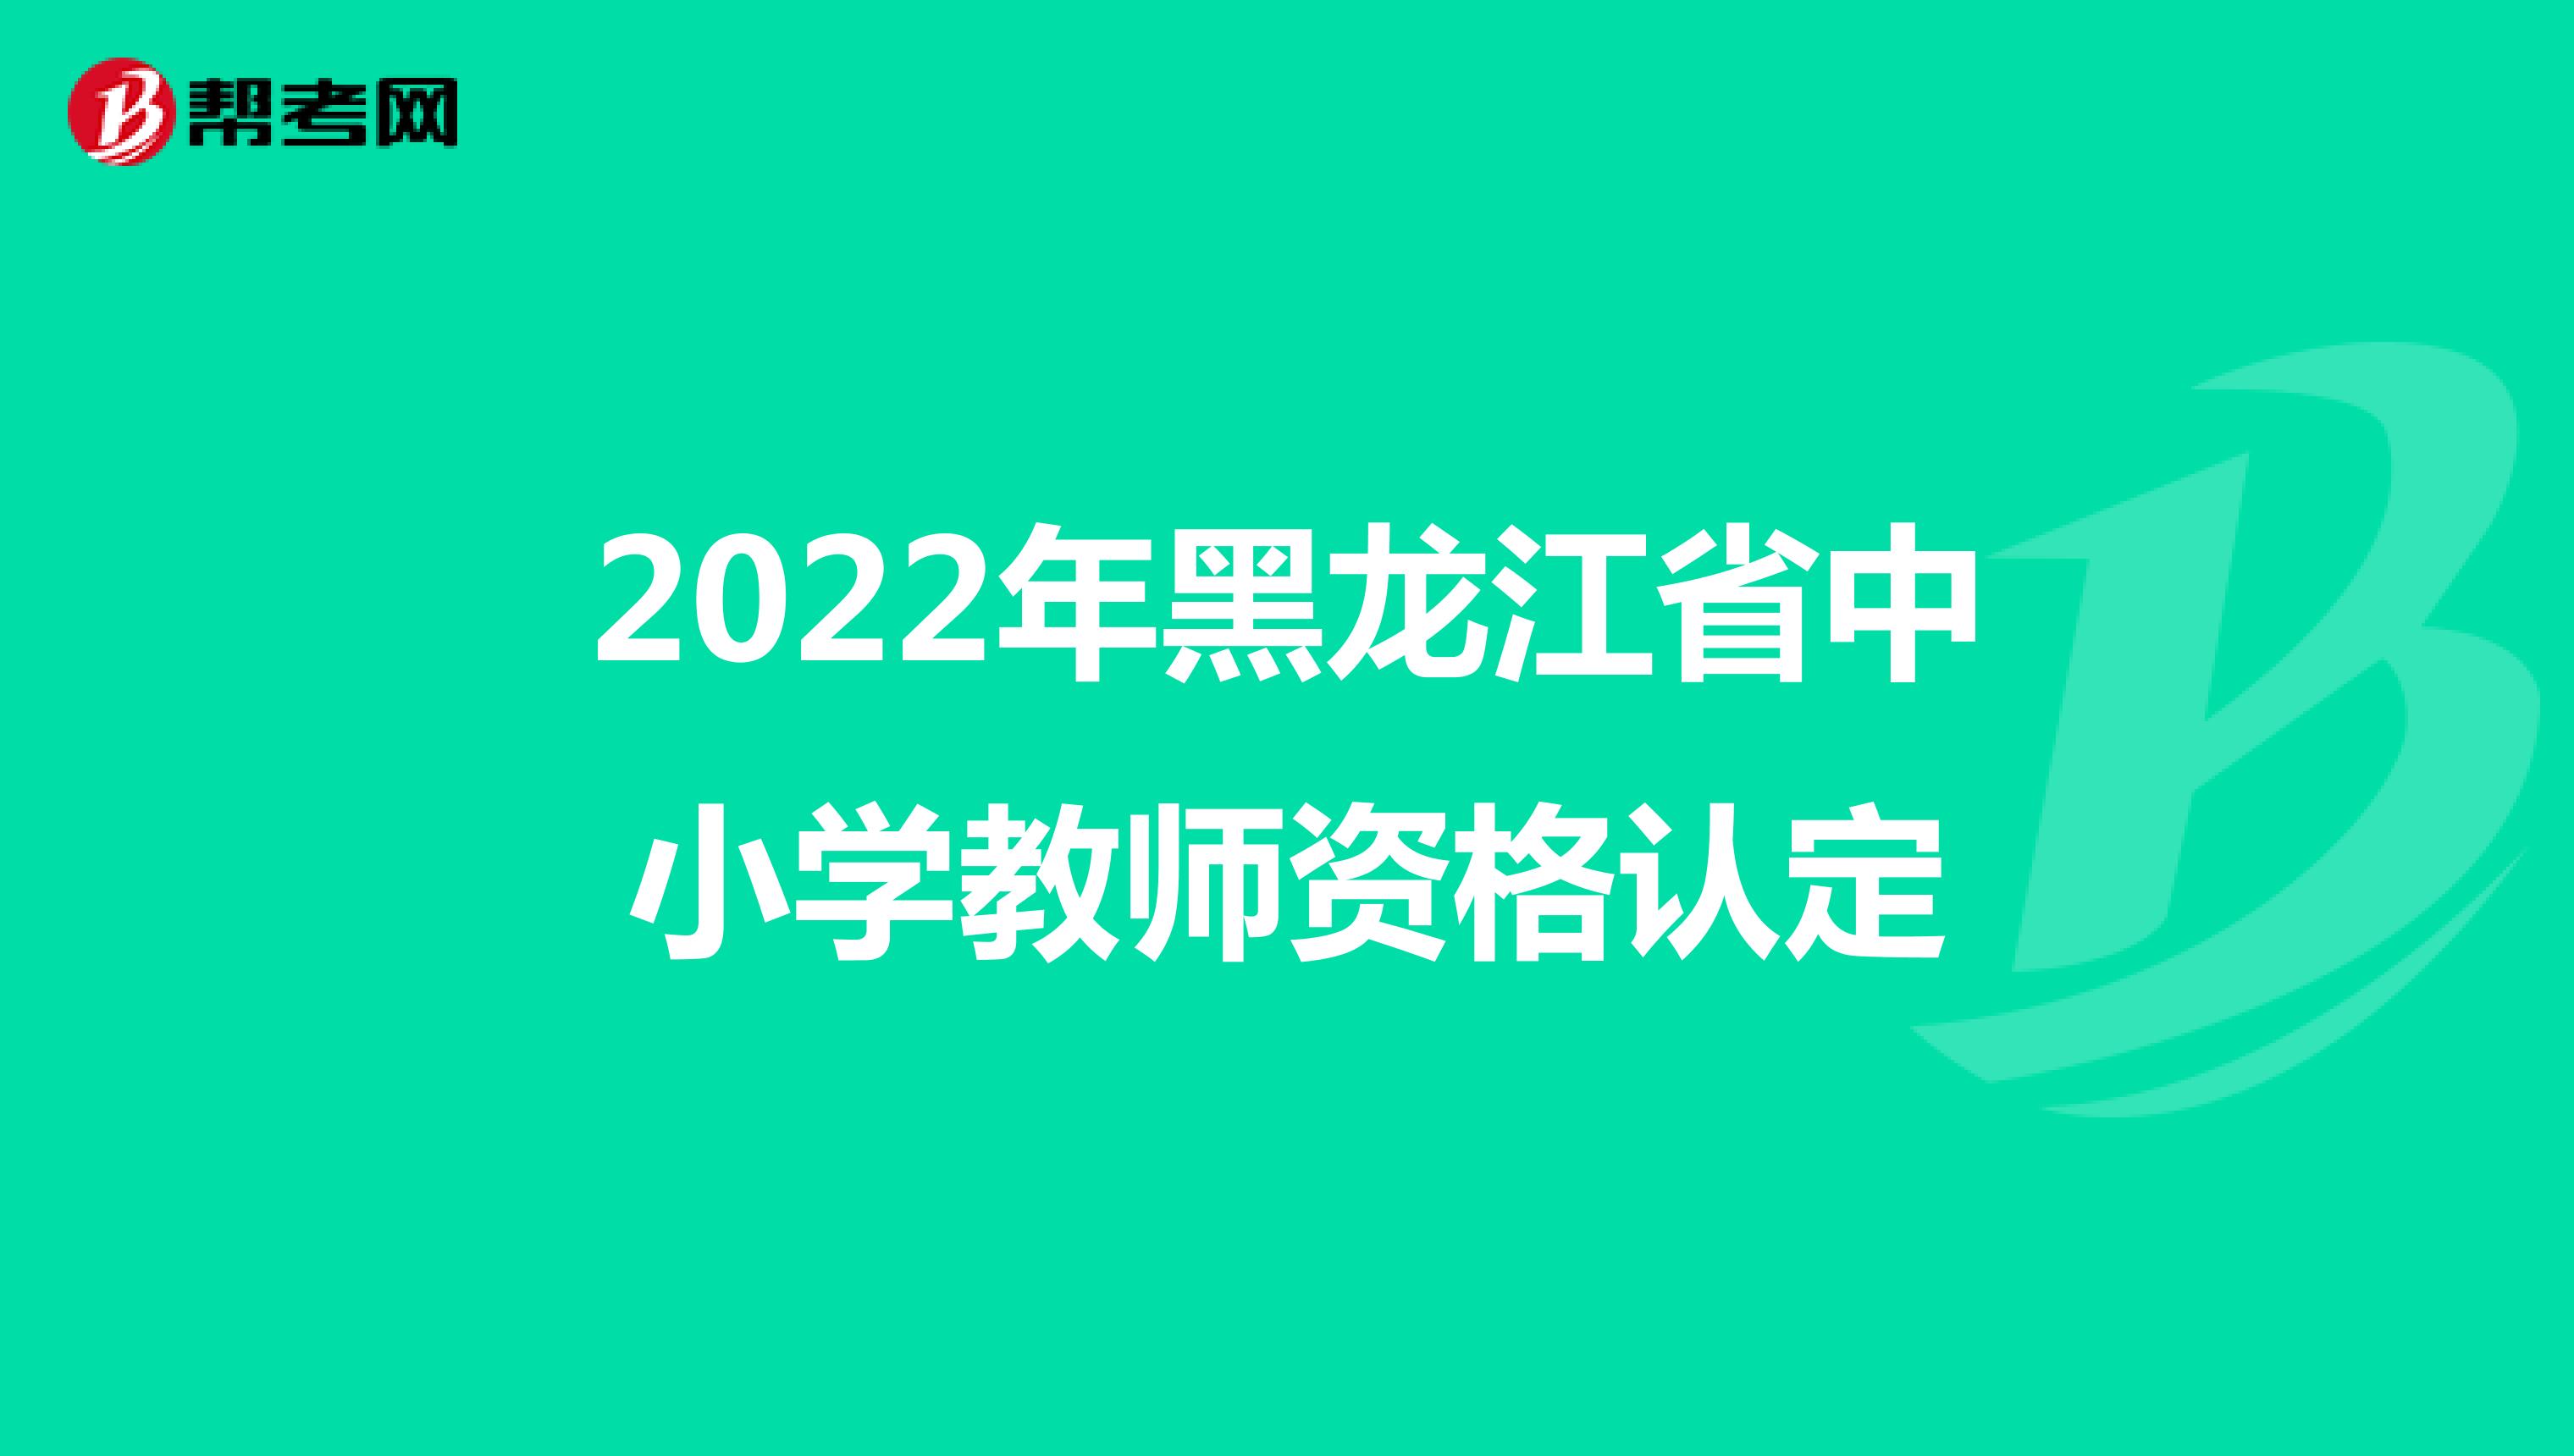 2022年黑龍江省中小學教師資格認定